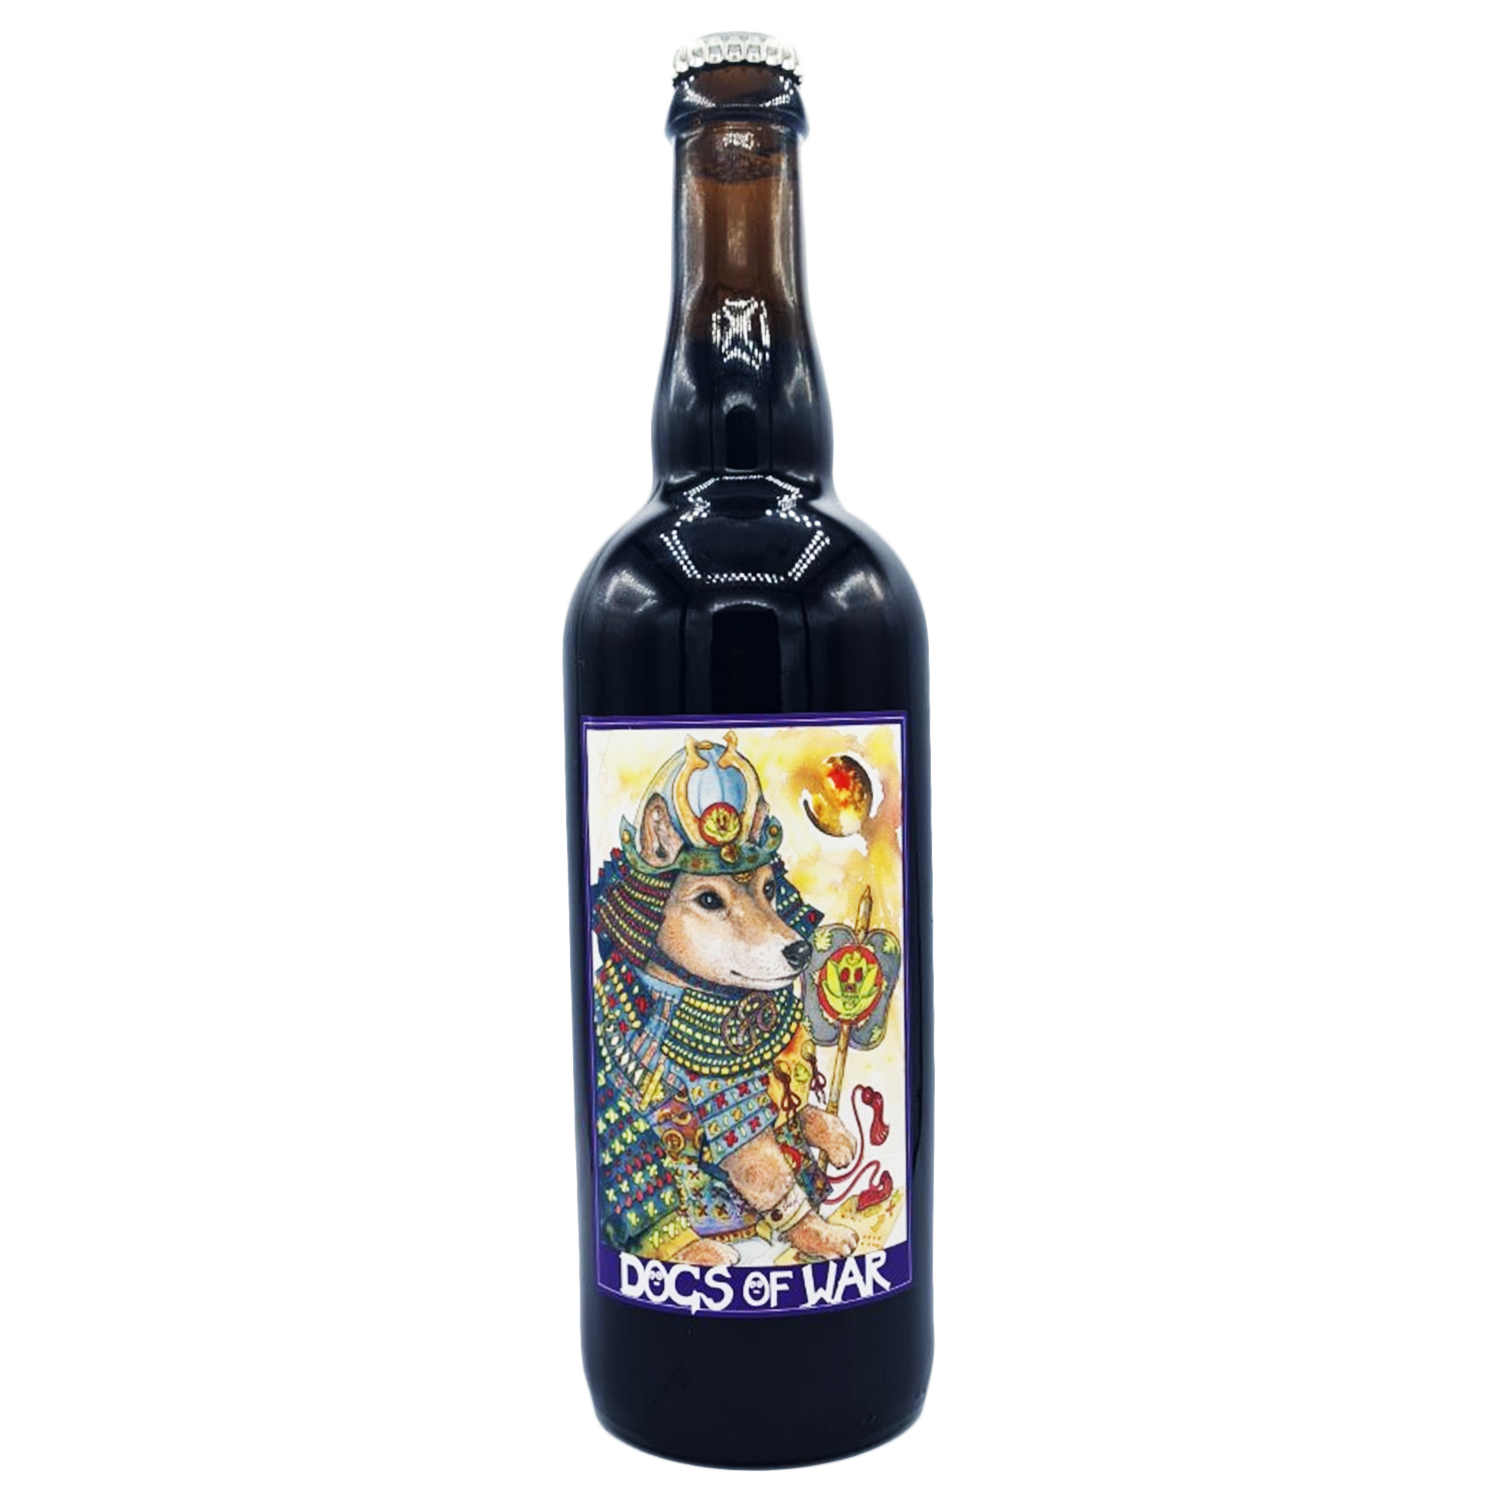 Torrside Dogs of War Samurai Shiba 2021.1 BA Barley Wine